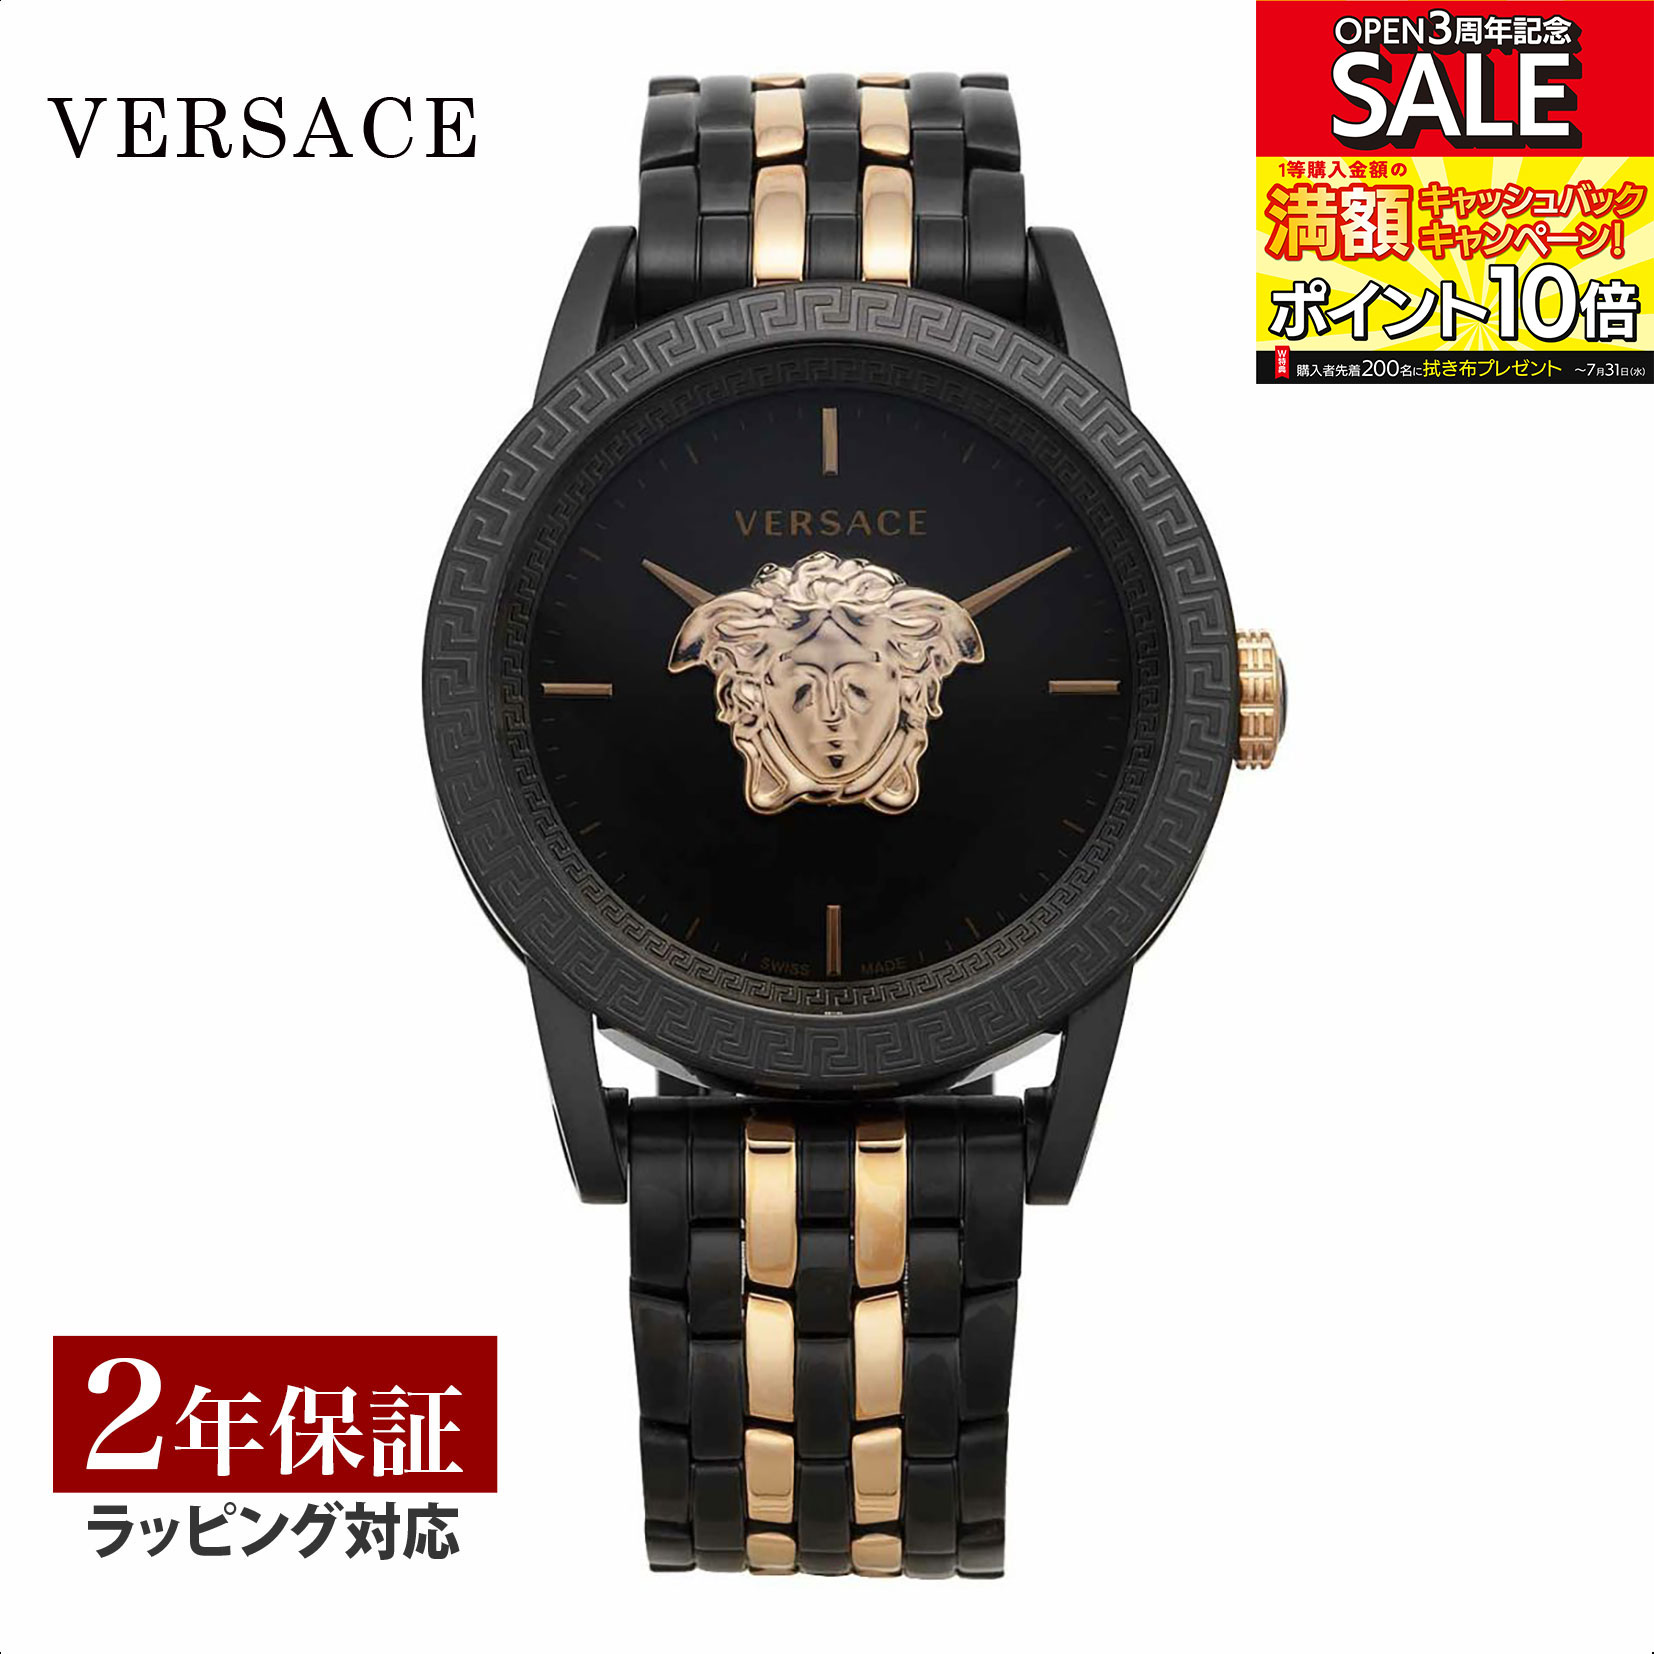 ヴェルサーチェ ヴェルサーチ VERSACE メンズ 時計 PALAZZO クォーツ ブラック VERD01623 時計 腕時計 高級腕時計 ブランド